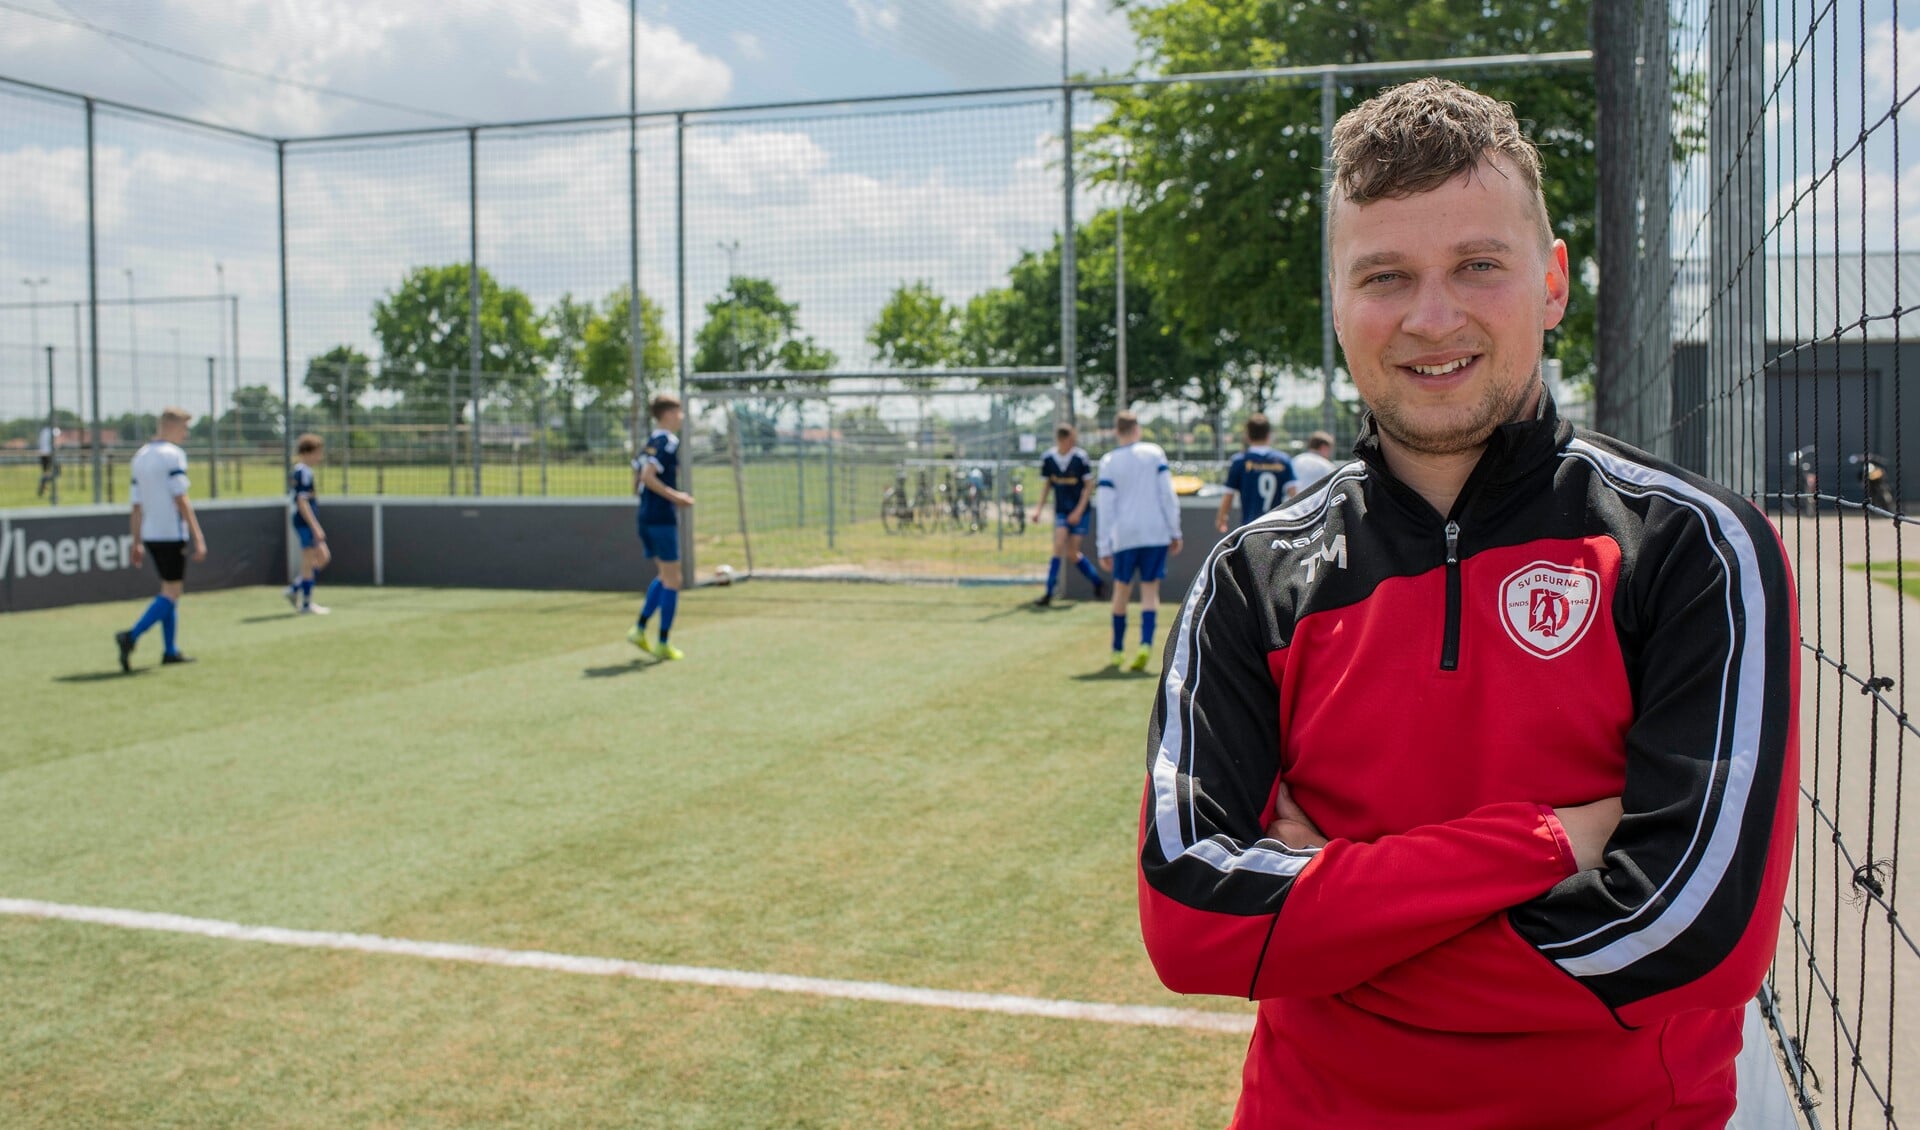 De jeugdspelers van SV Deurne kunnen de komende periode doortrainen. (Archieffoto: Hein van Bakel)